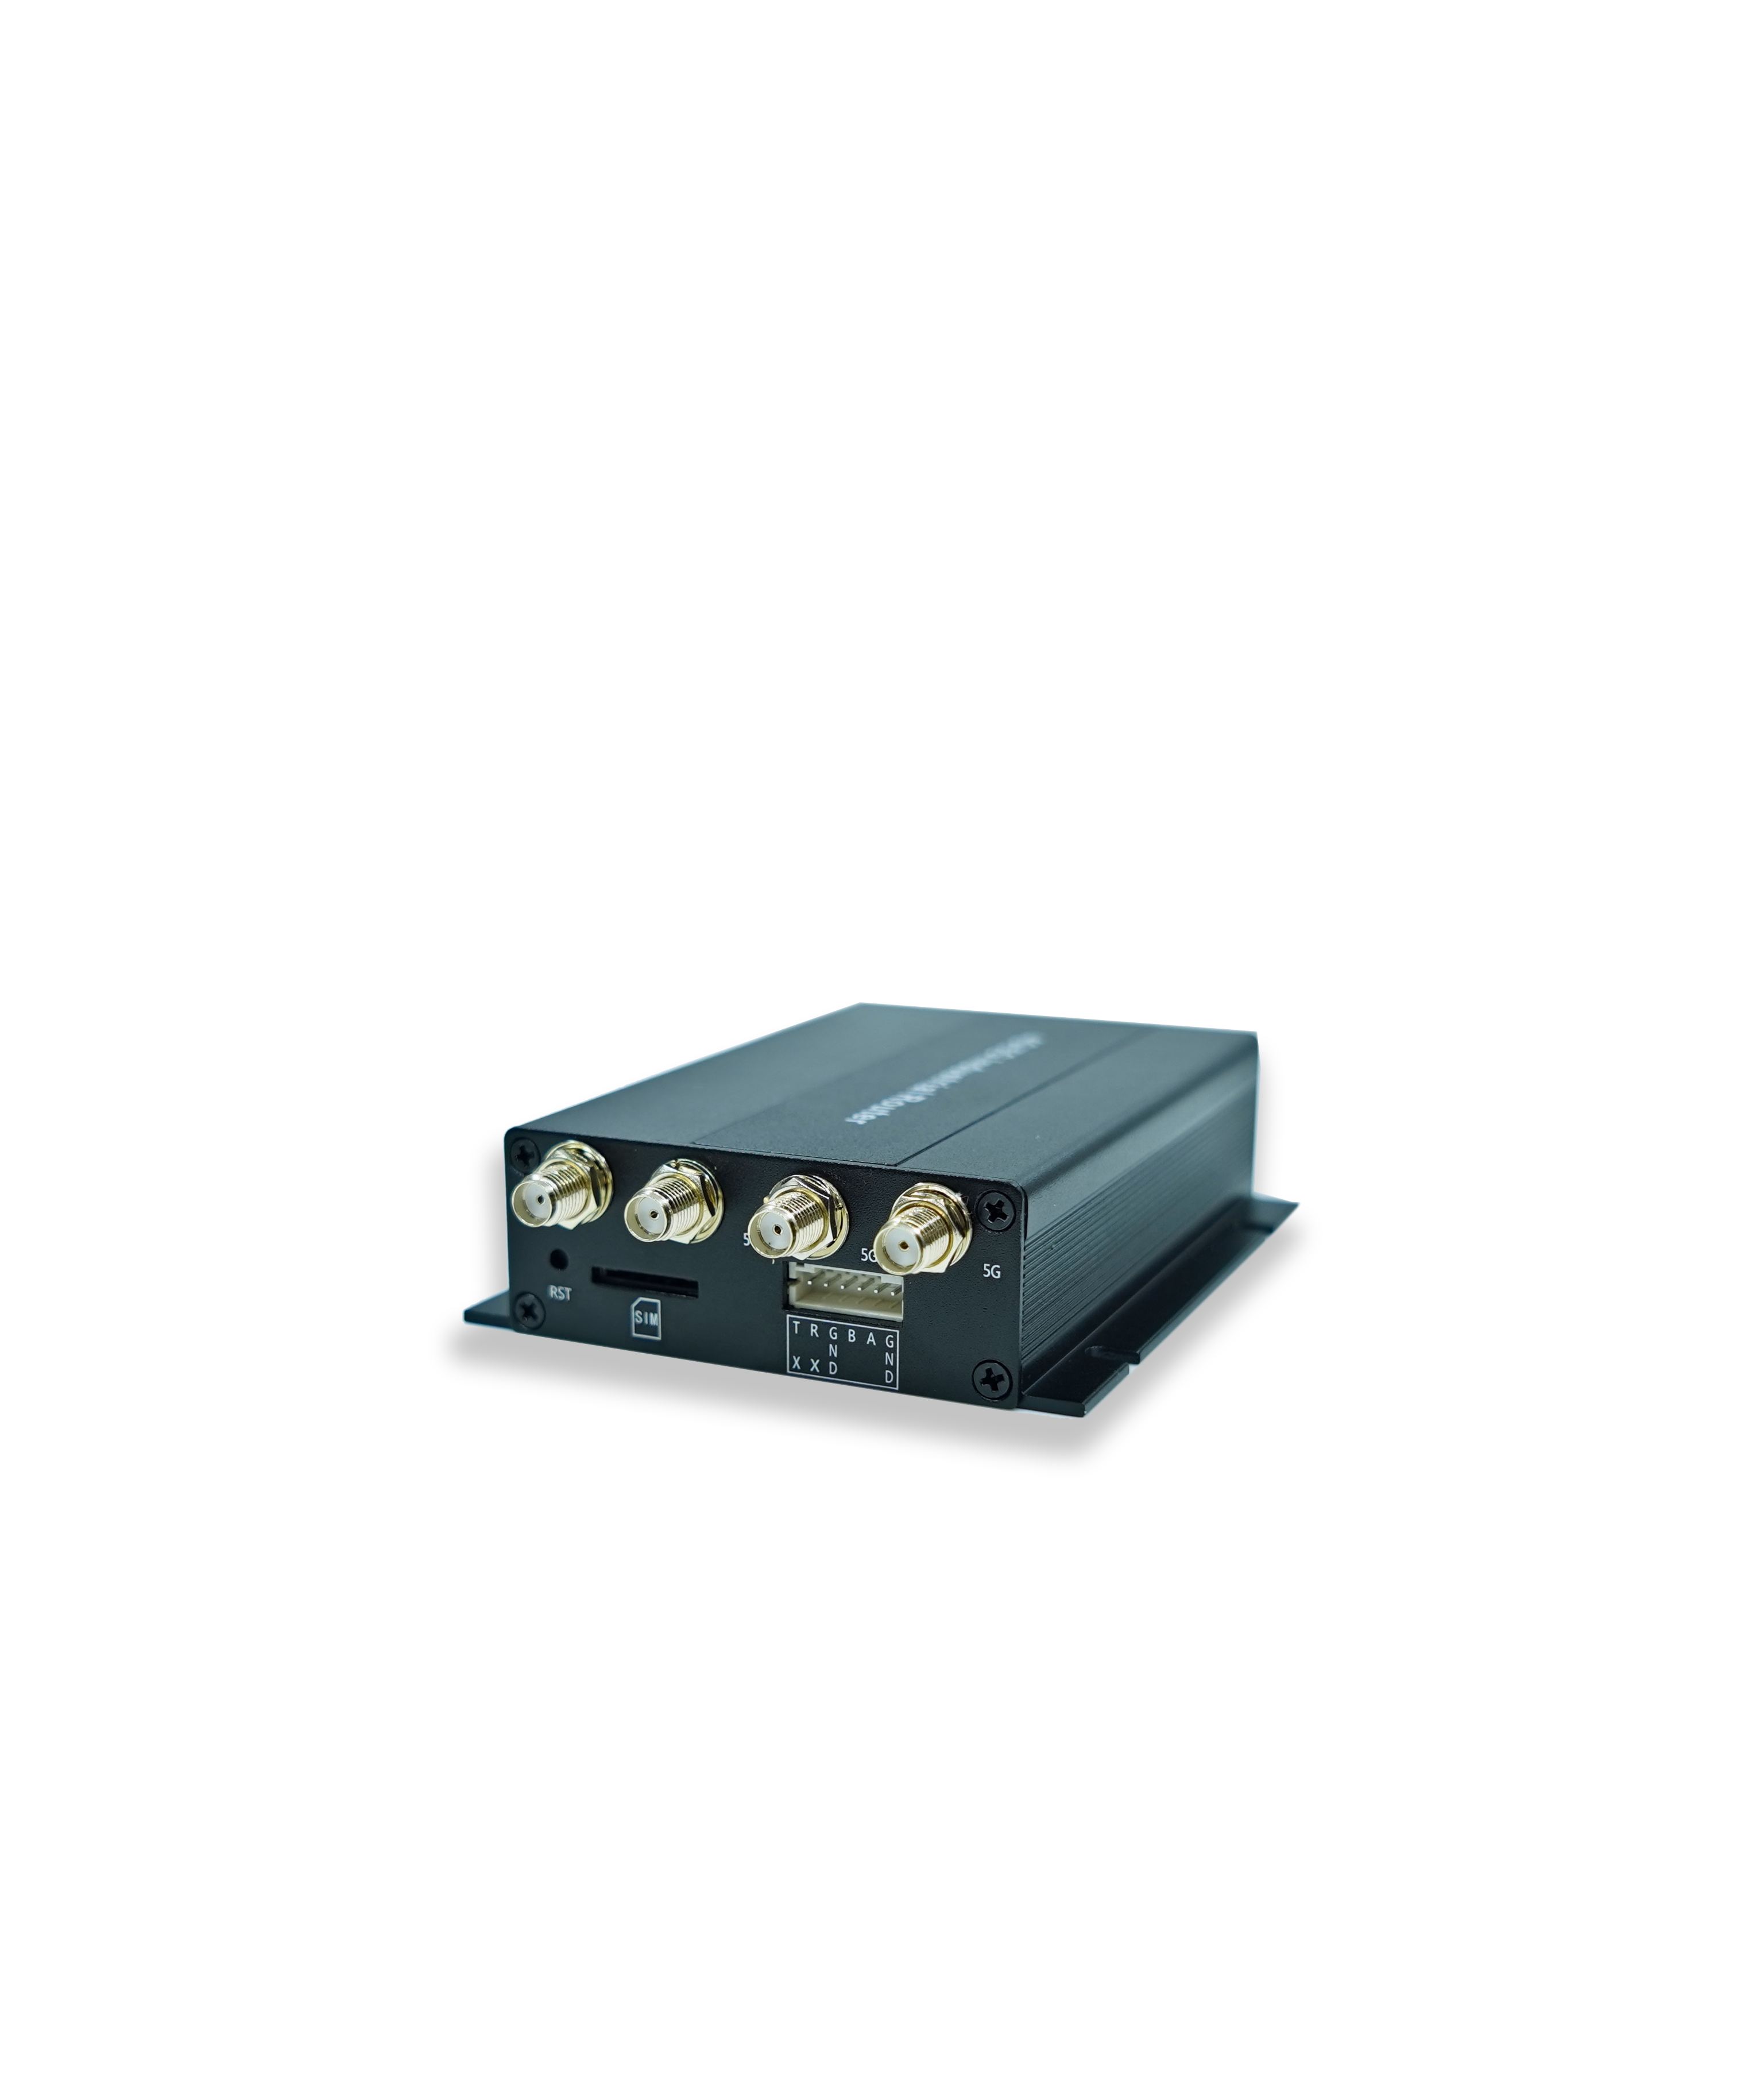 (T300-MINI1)- 5G Cellular Router Mini Home Modem